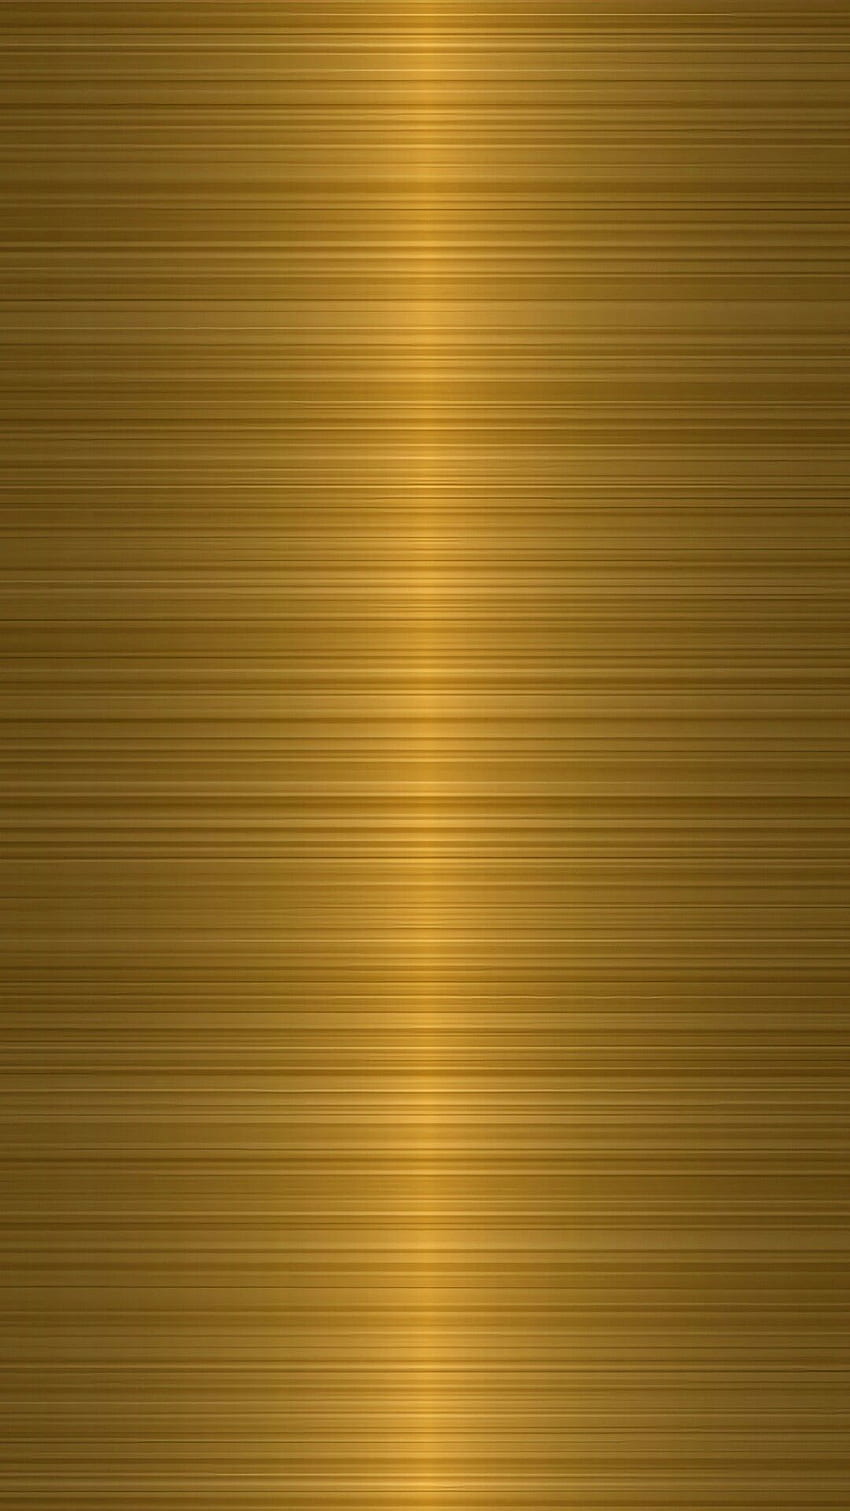 Goldtextur 6 - Goldfarbe für Handys -, goldene Farbe HD-Handy-Hintergrundbild